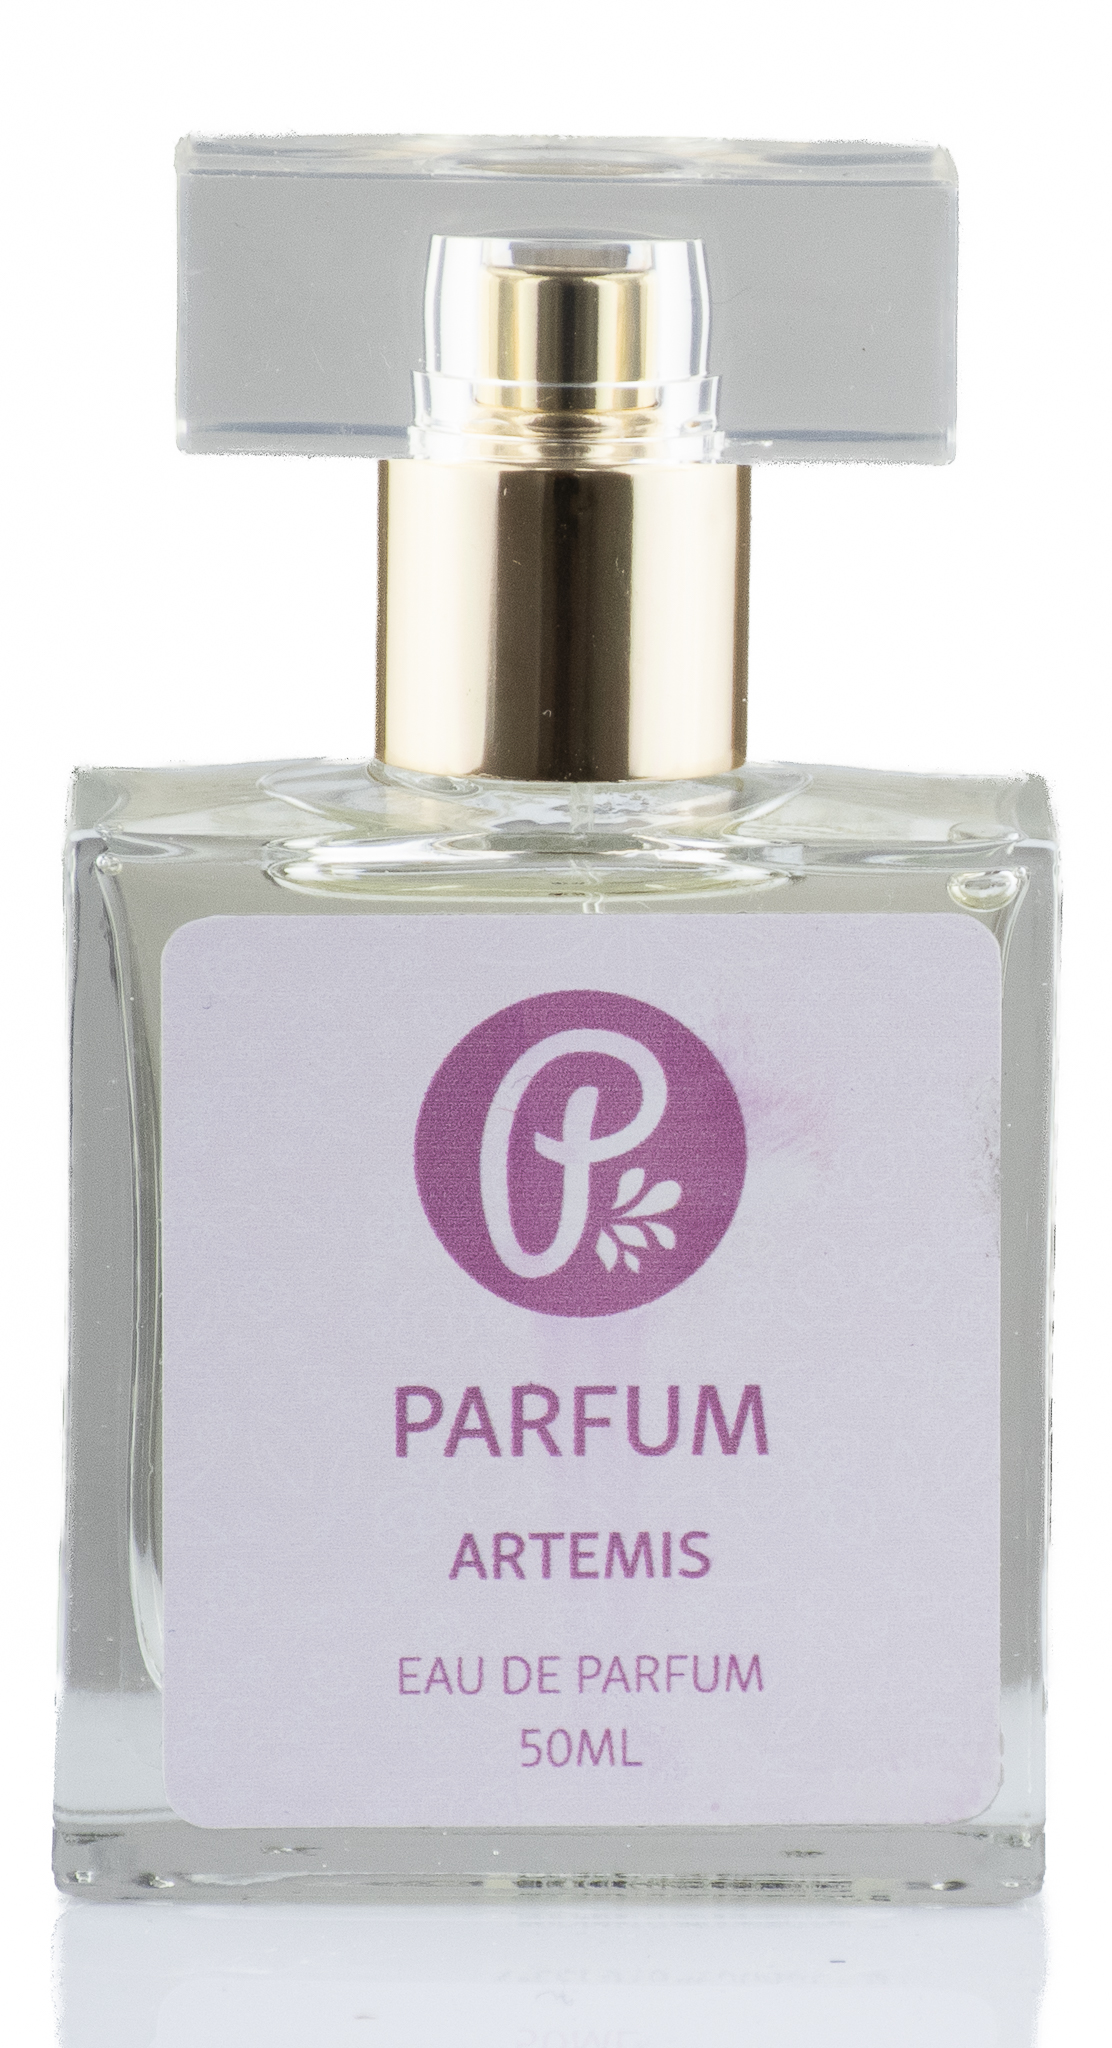 PANAKEIA PARFUM - Artemis 50ml